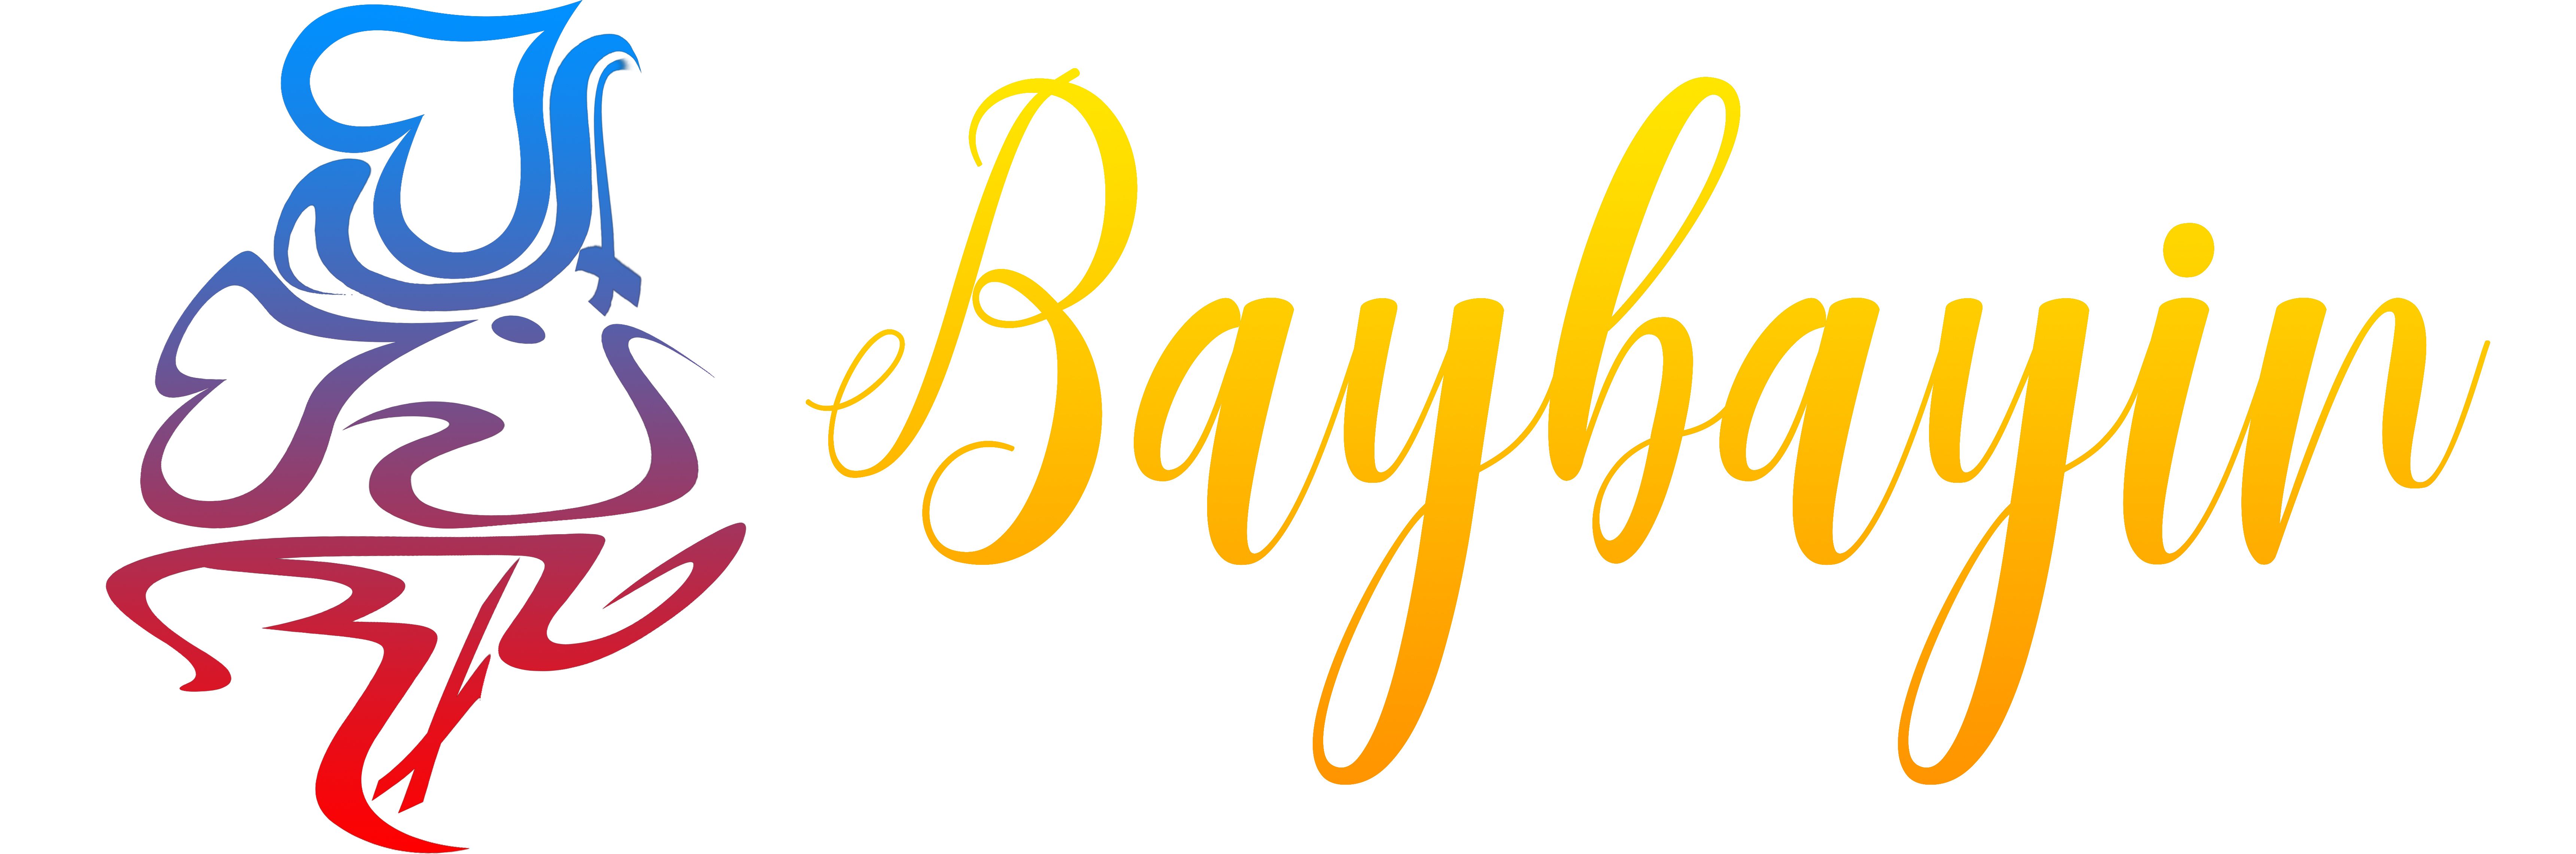 Baybayin Writing Tutorial